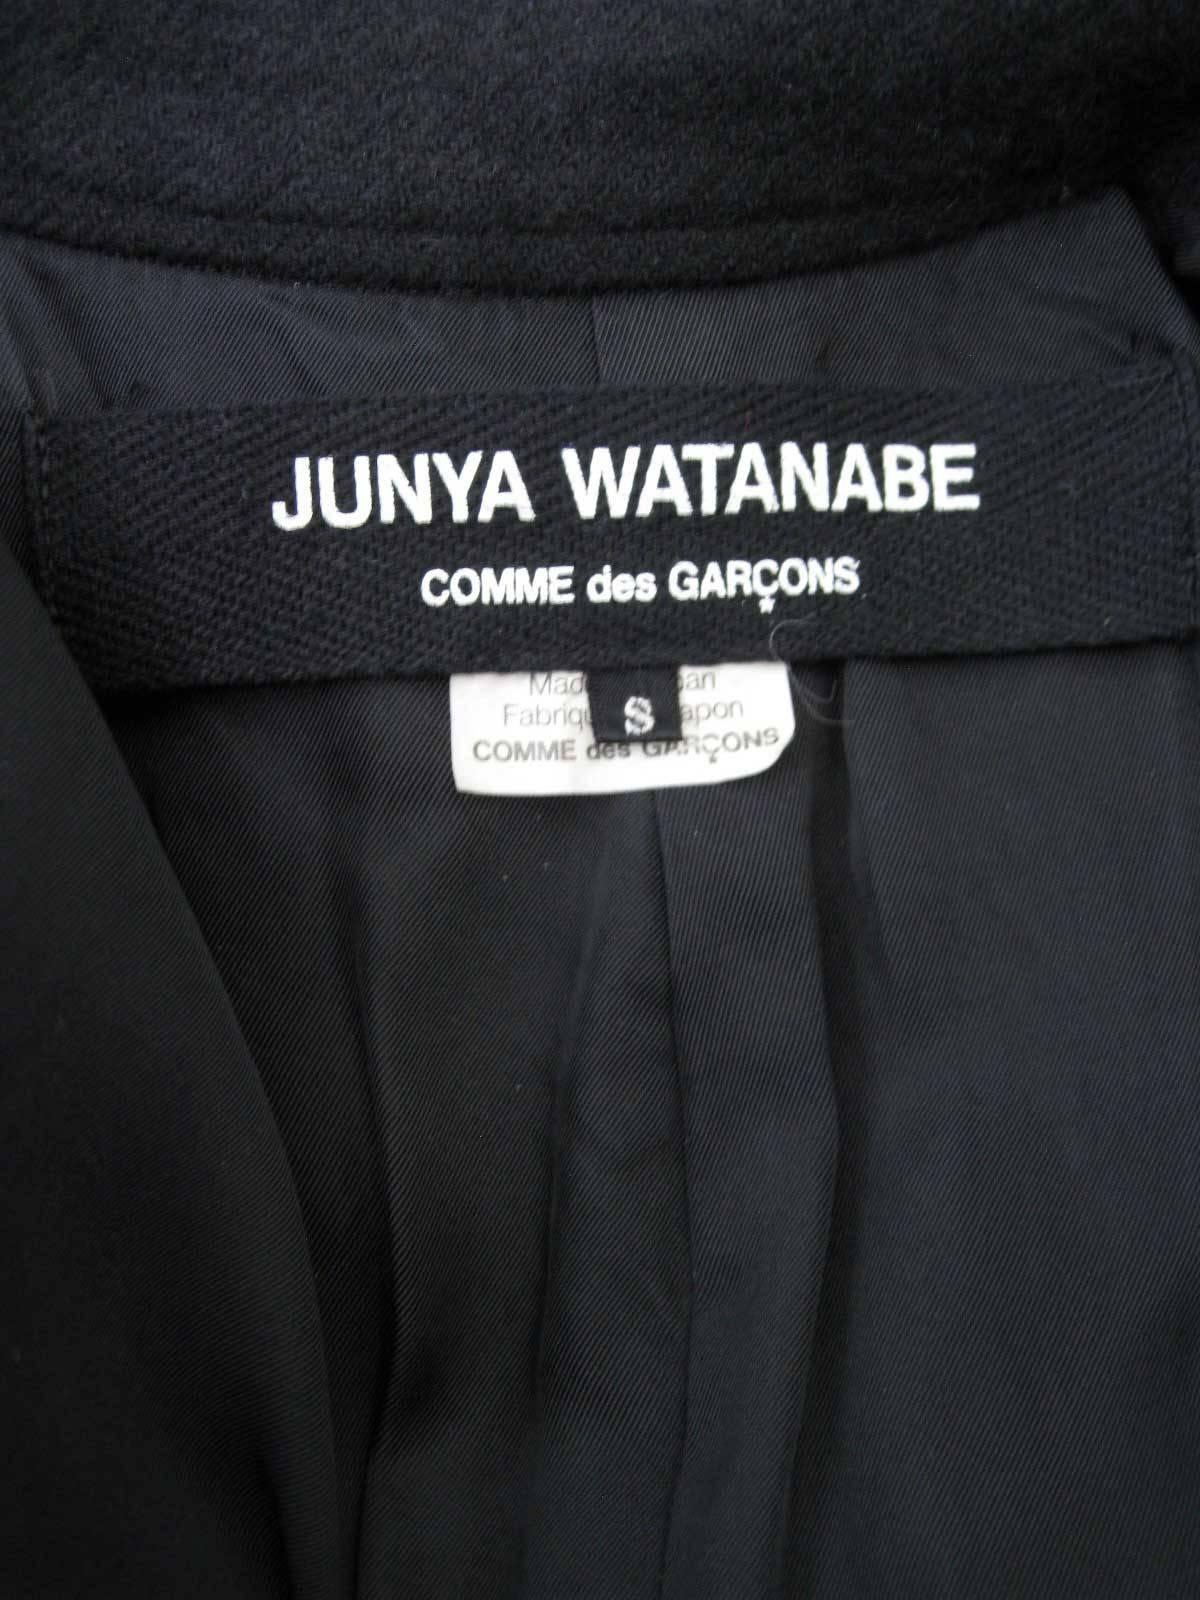 Women's Junya Watanabe for Comme des Garcons 2003 Frayed Hem Coat & Dress For Sale